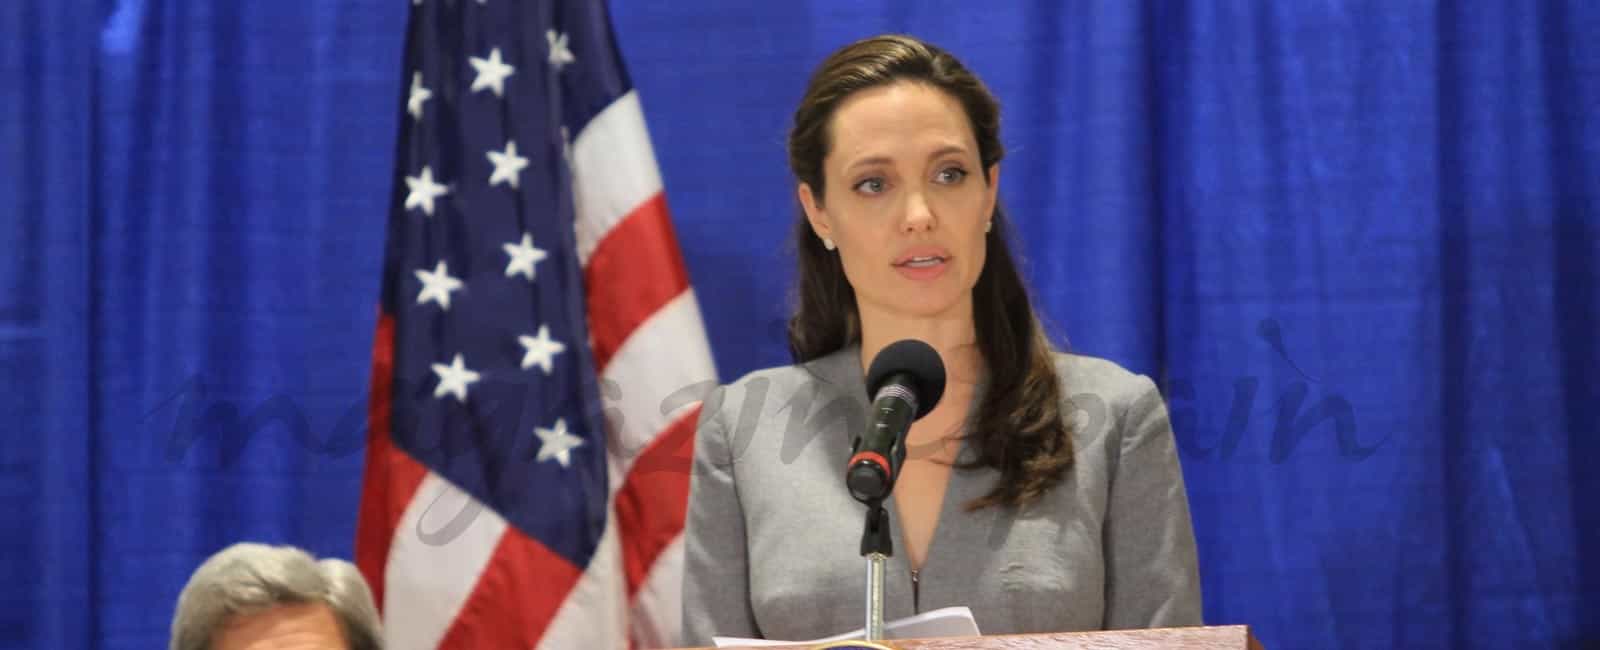 Angelina Jolie continúa su lucha imparable por los derechos de los refugiados